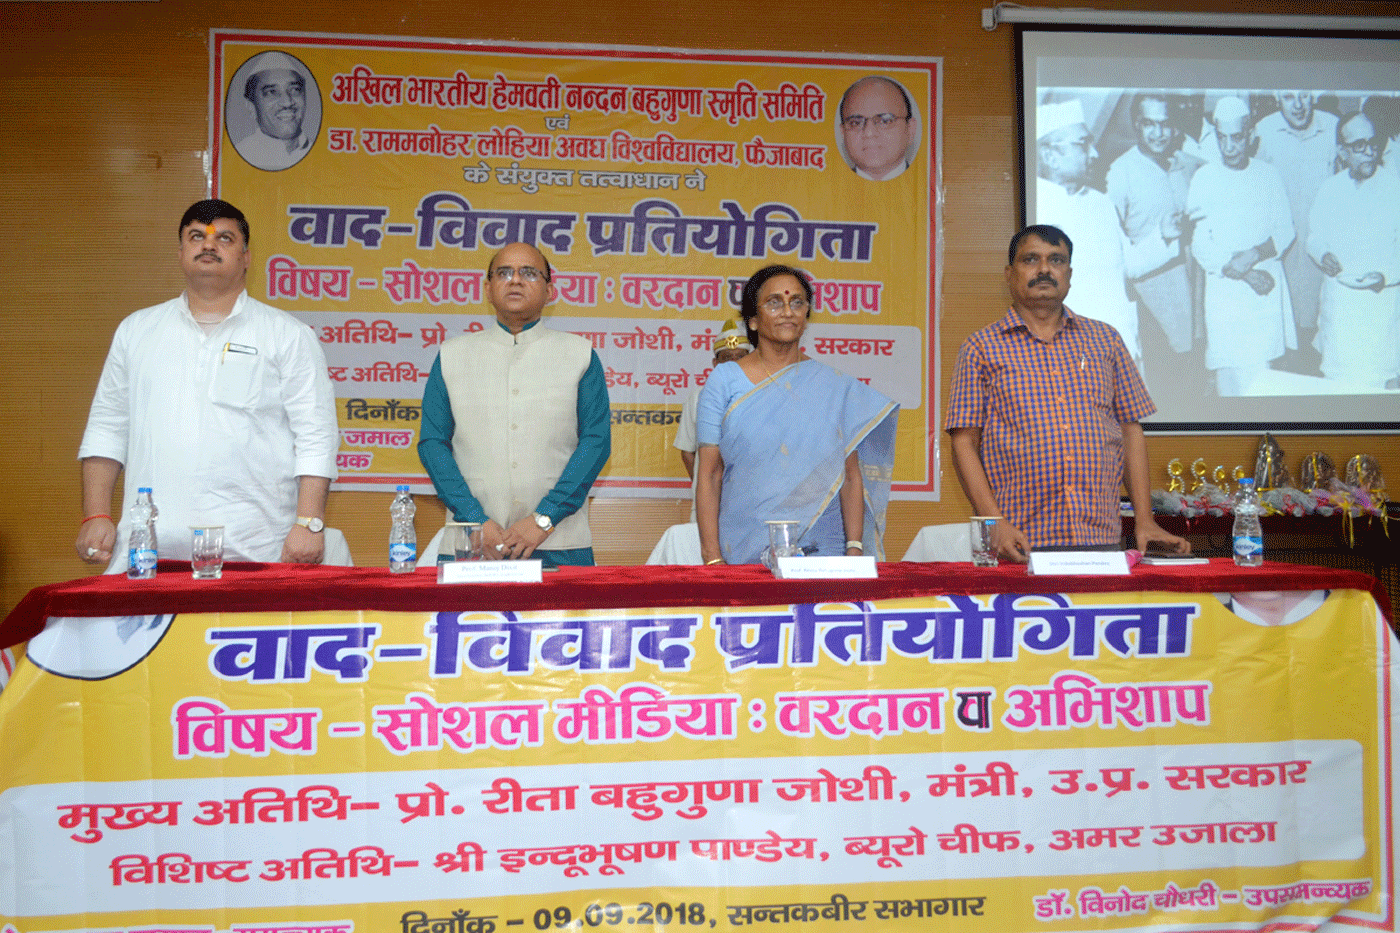 Debate competition in memory of Hemvati nandan bahuguna